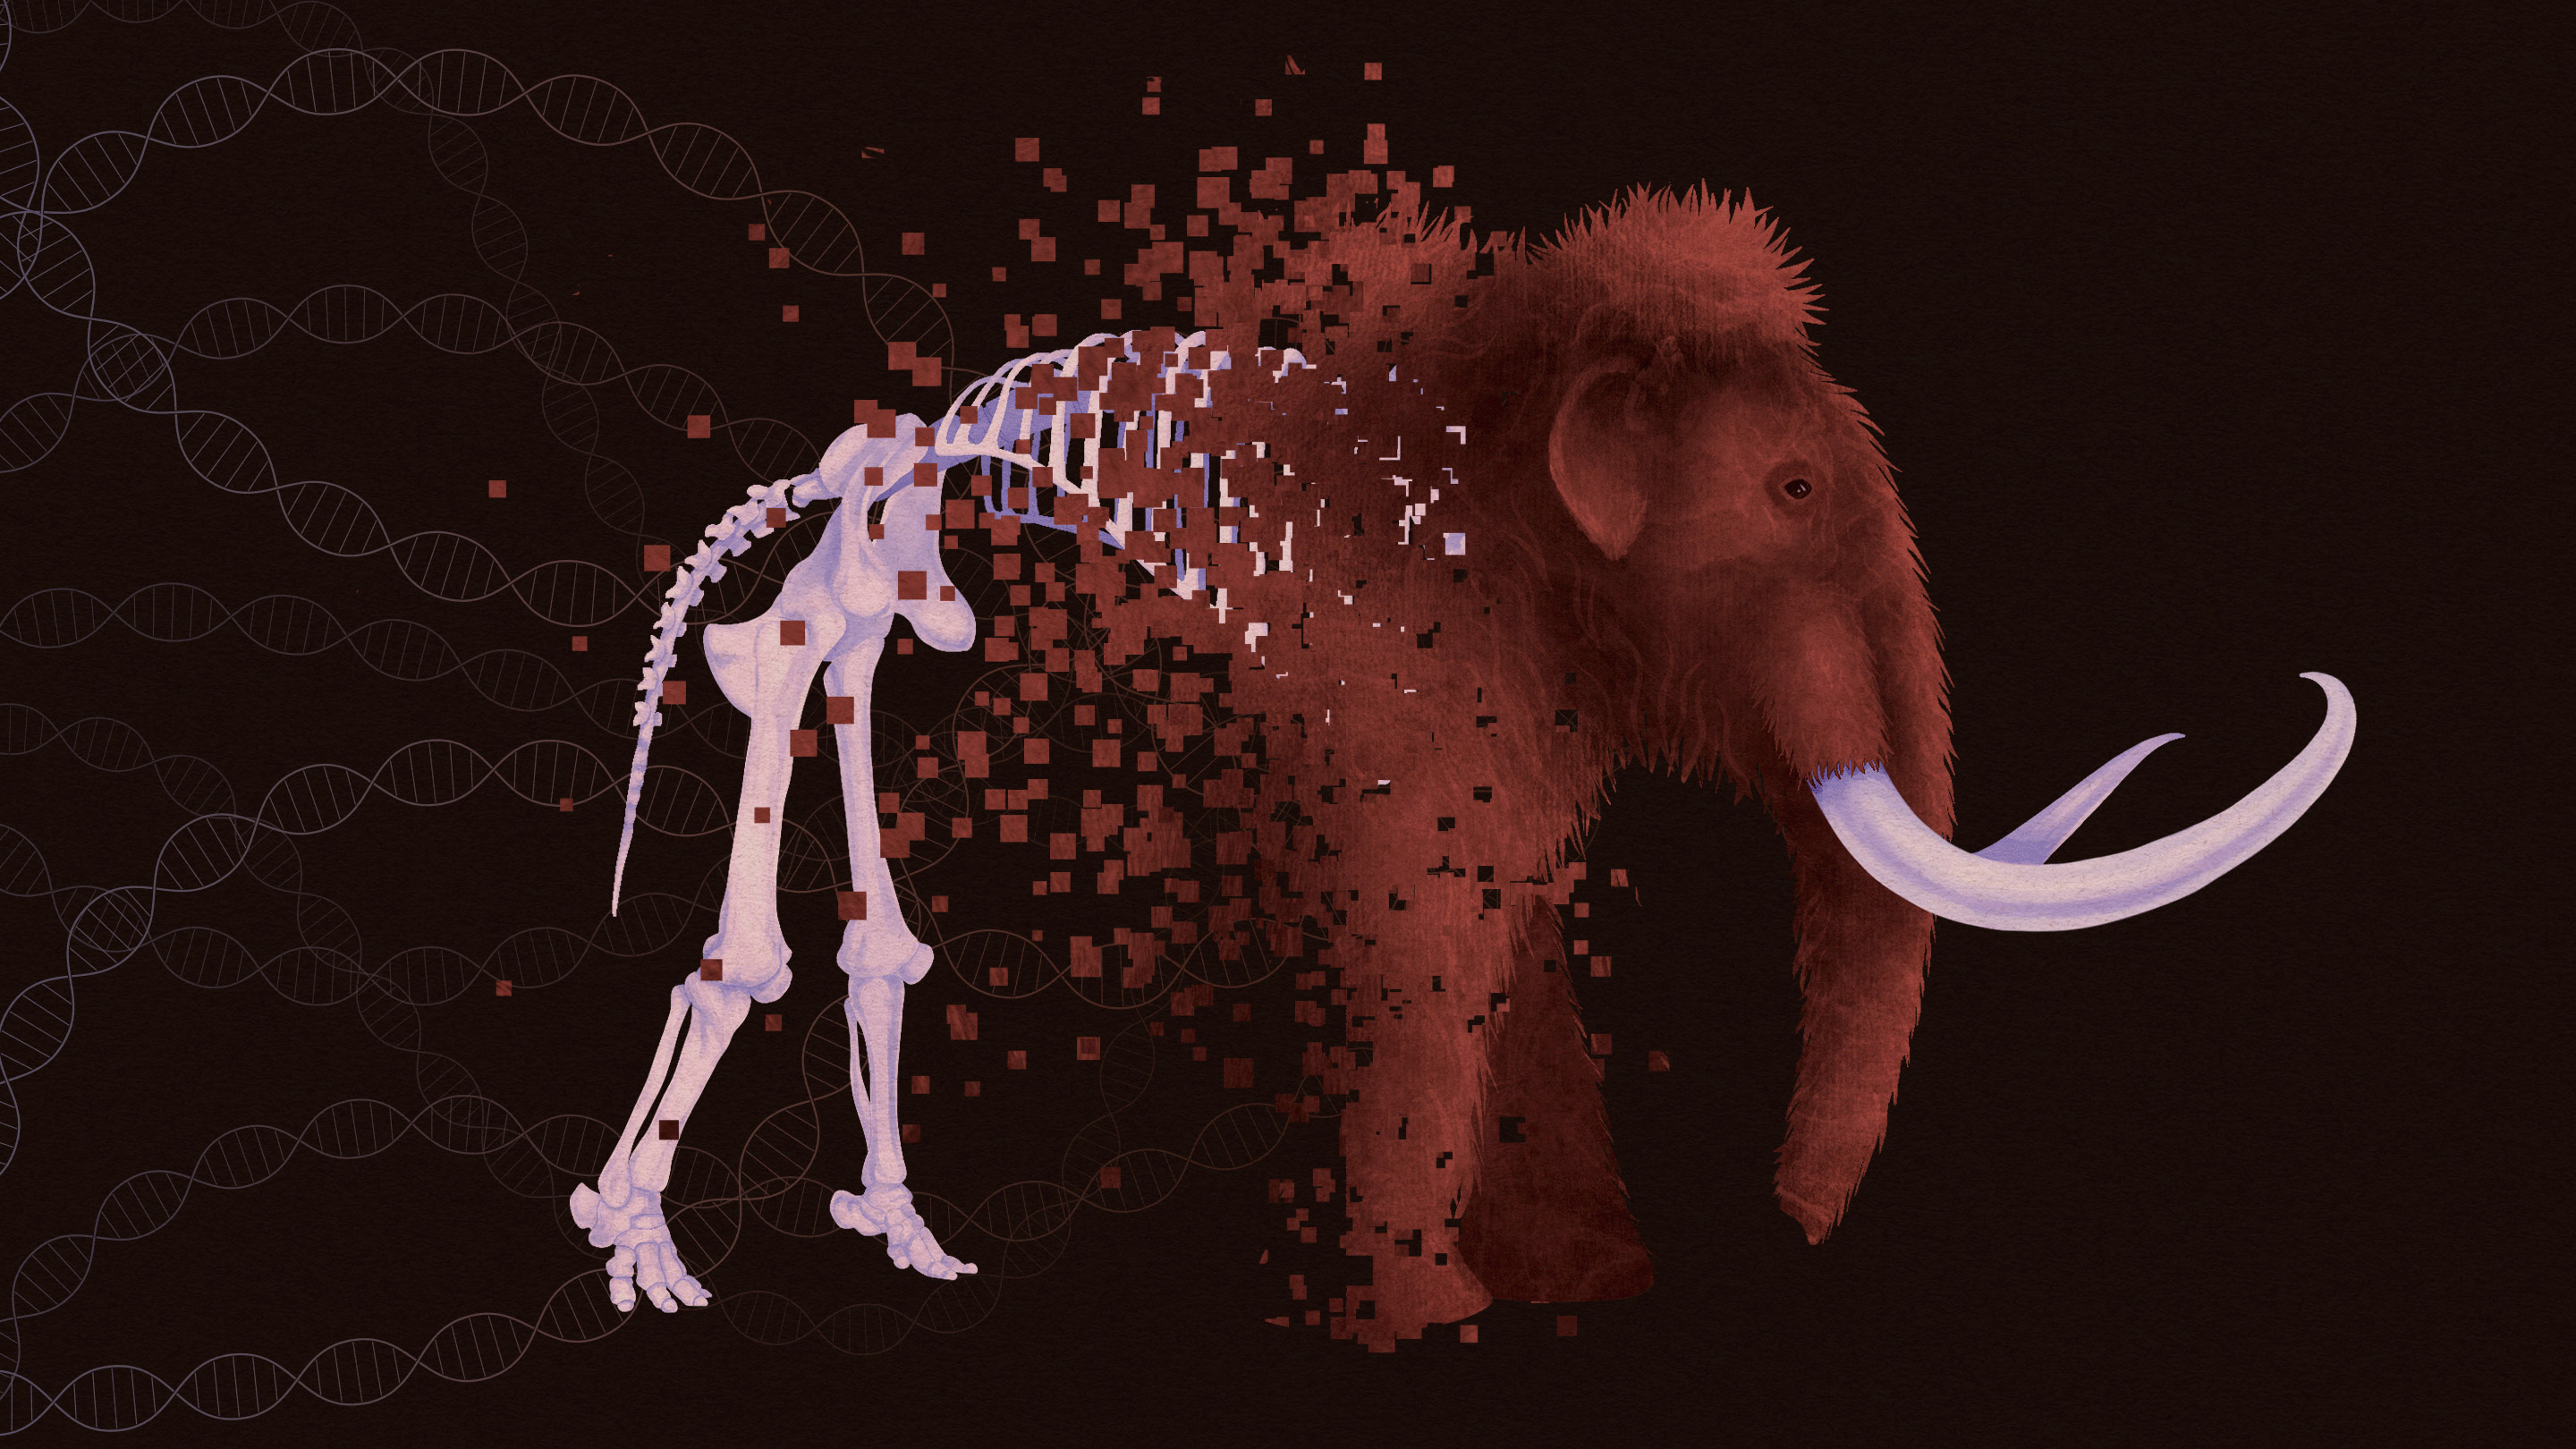 Hairy Elephants (Mammoths) are a Myth